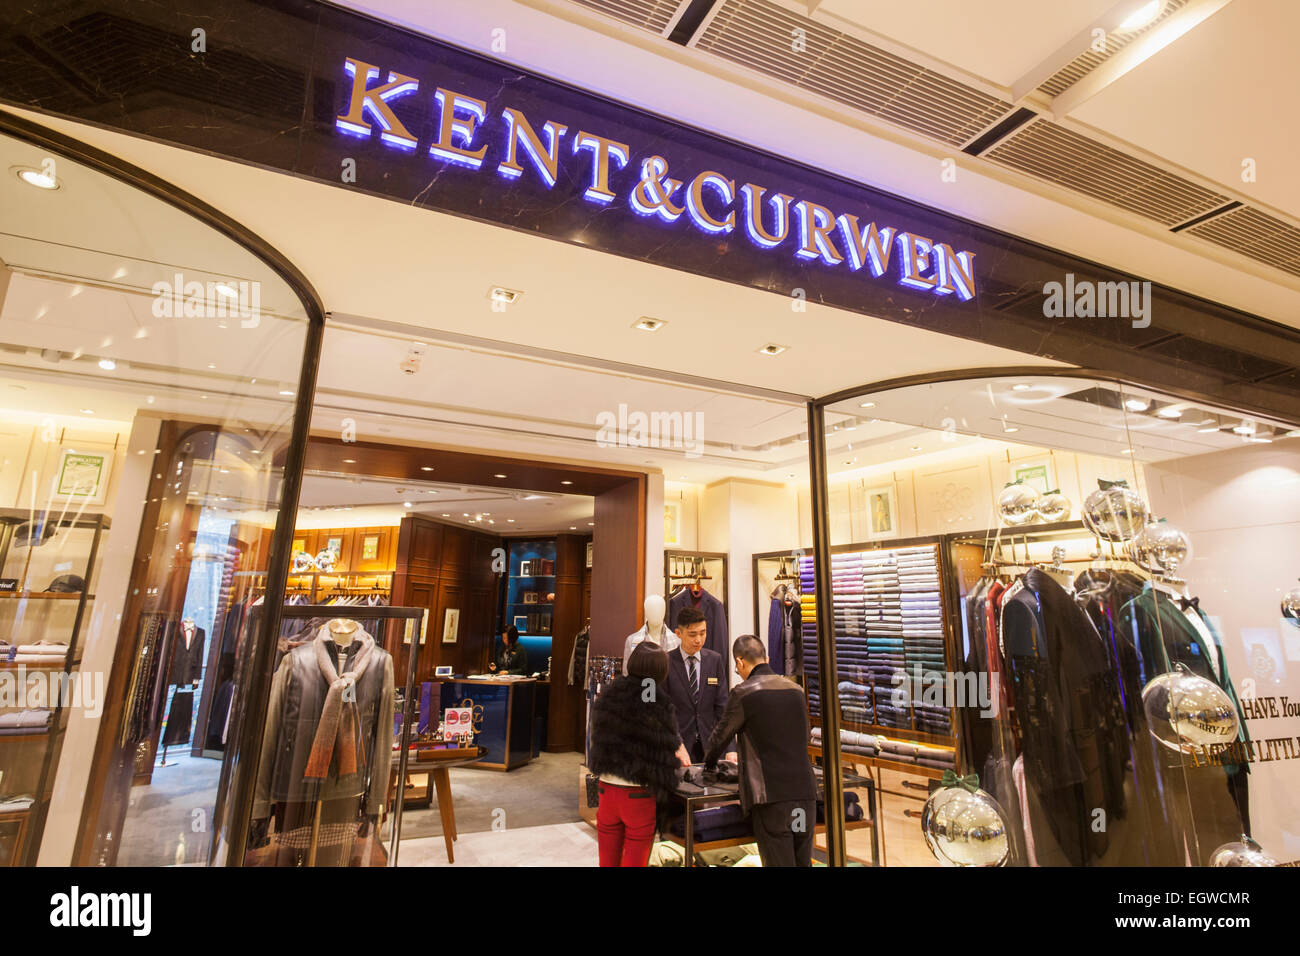 China, Hong Kong, Central, IFC Mall, Kent & Curwen Store Stock Photo